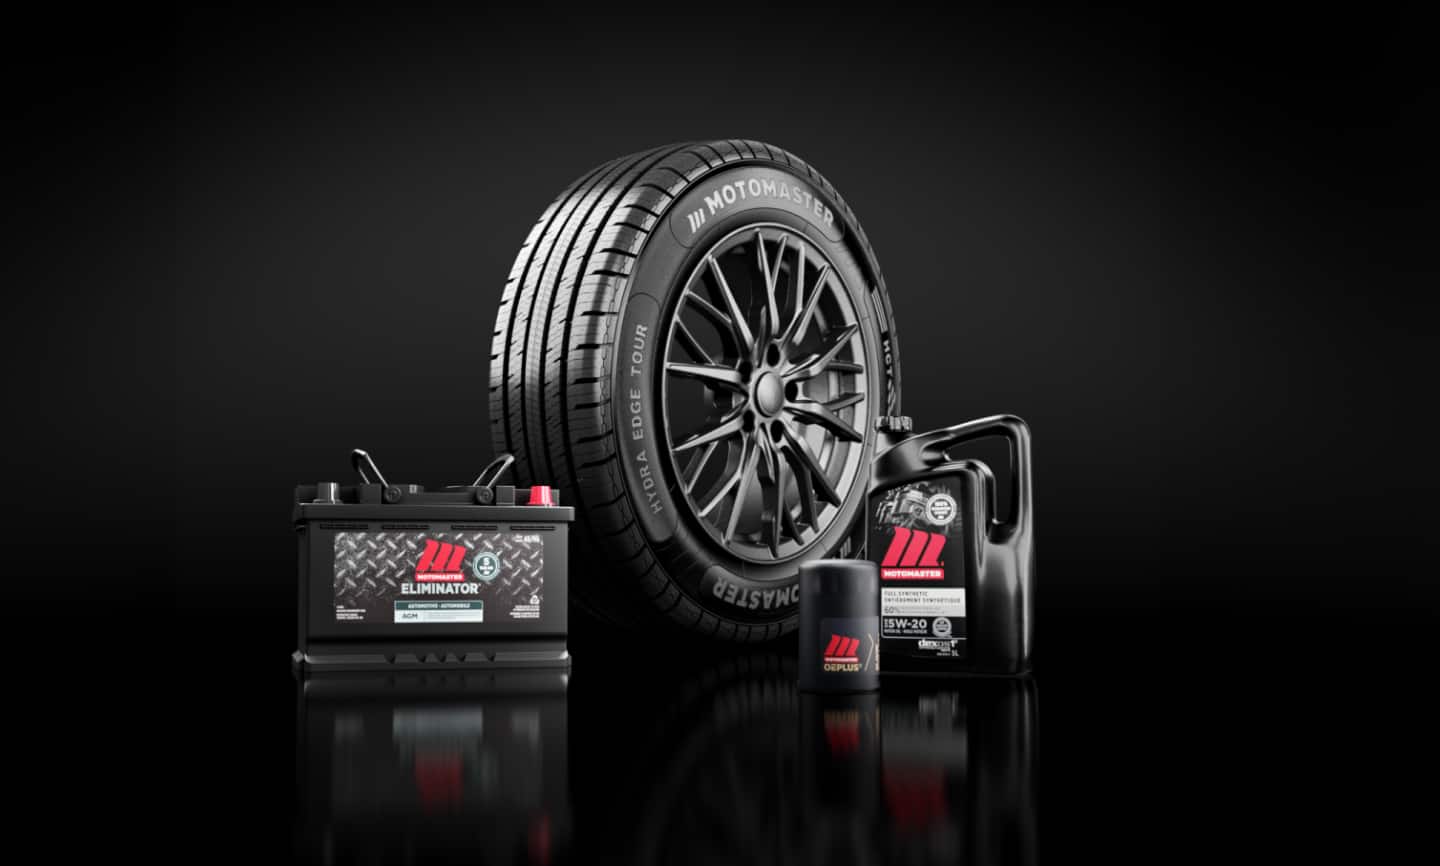 Un pneu, une batterie de voiture, un filtre à huile et un bidon d’huile à moteur MotoMaster disposés en groupe.